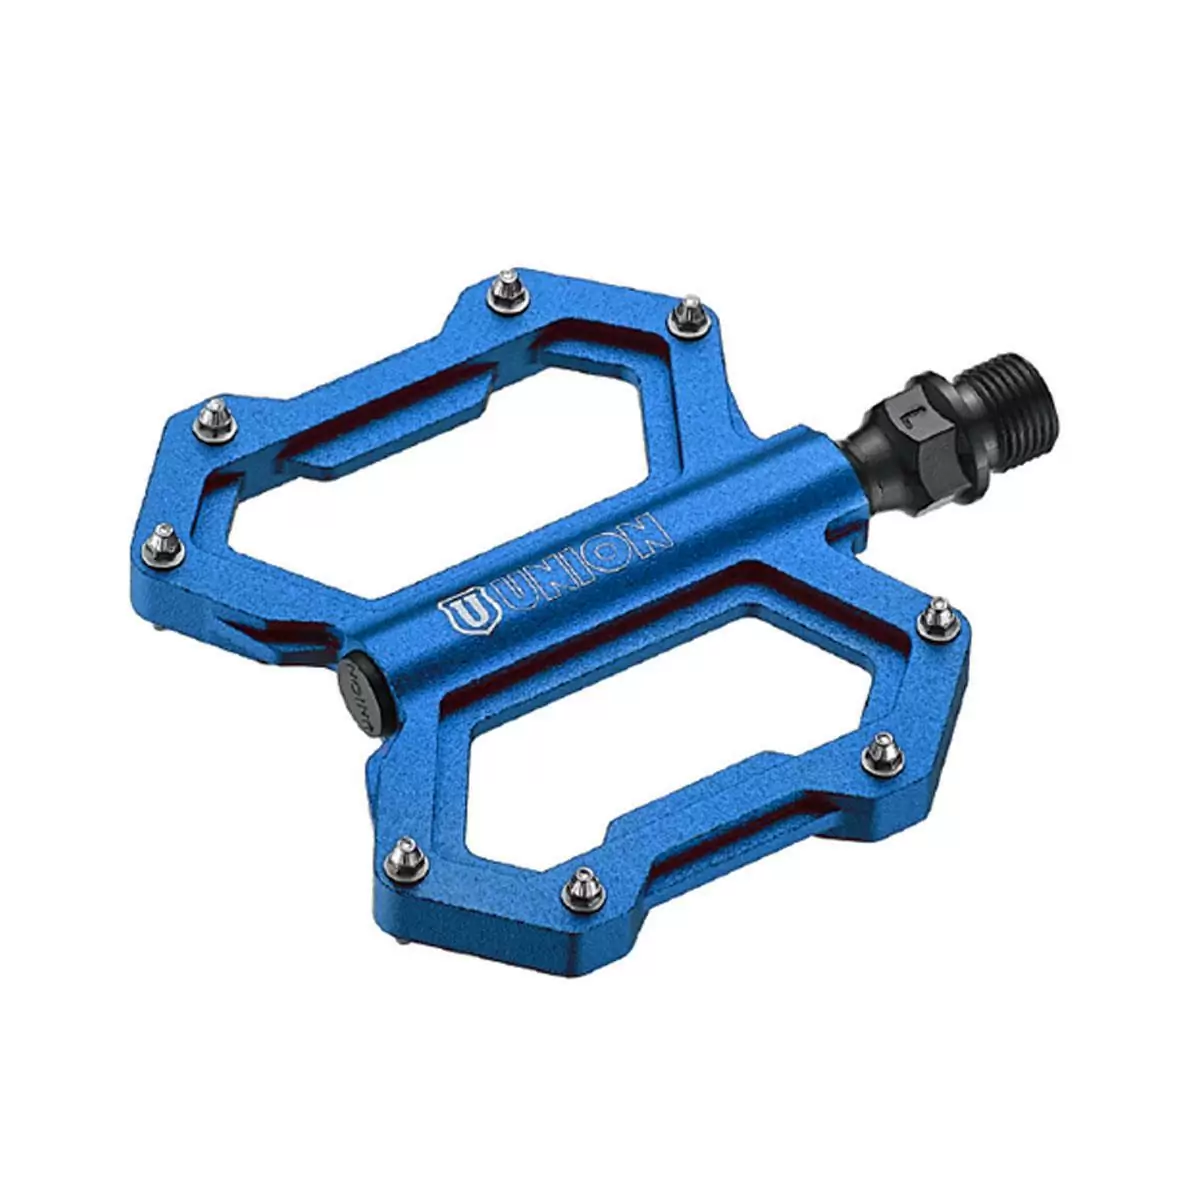 pair freeride pedals sp1210 cnc aluminium blue - image